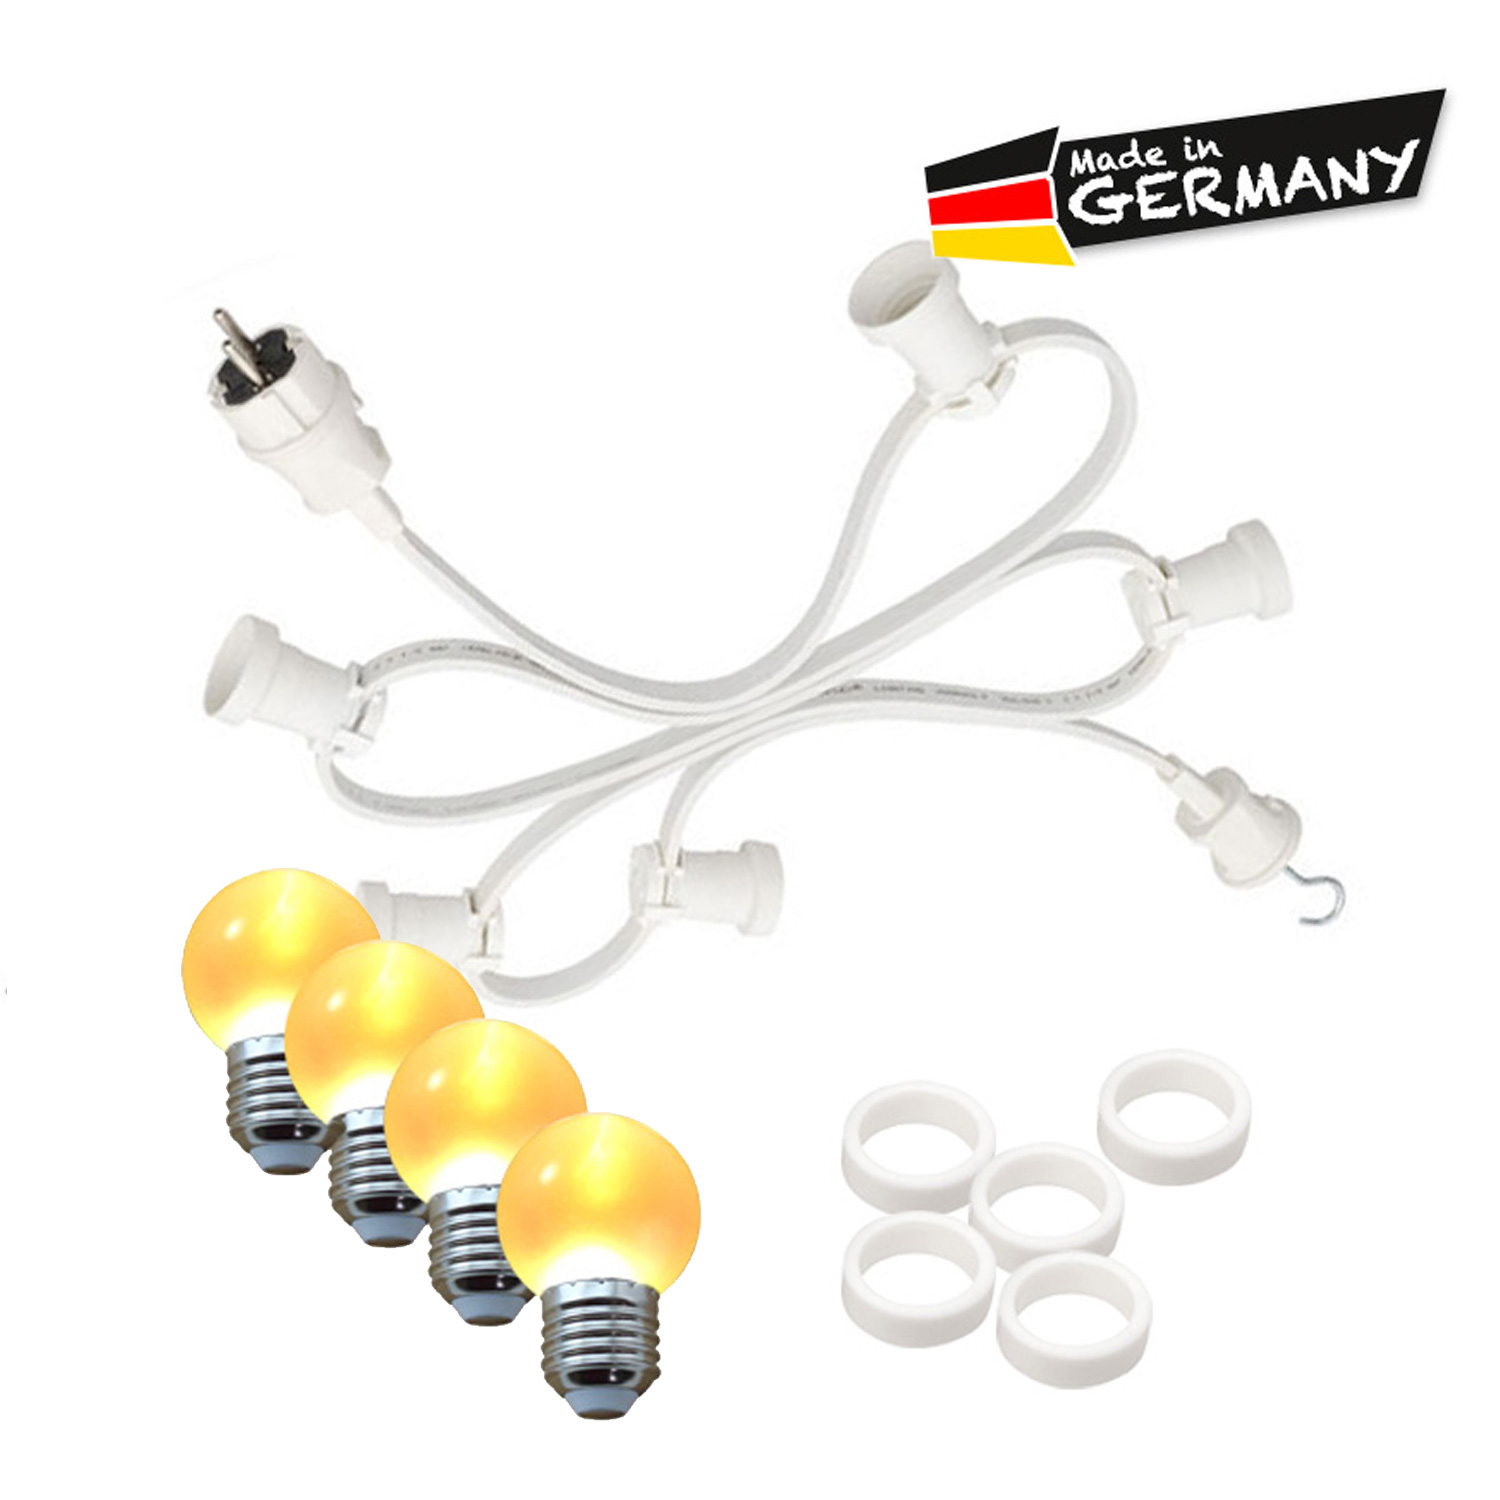 Illu-/Partylichterkette 40m - Außenlichterkette - Made in Germany - 60 x ultra-warmweiße LED Kugeln